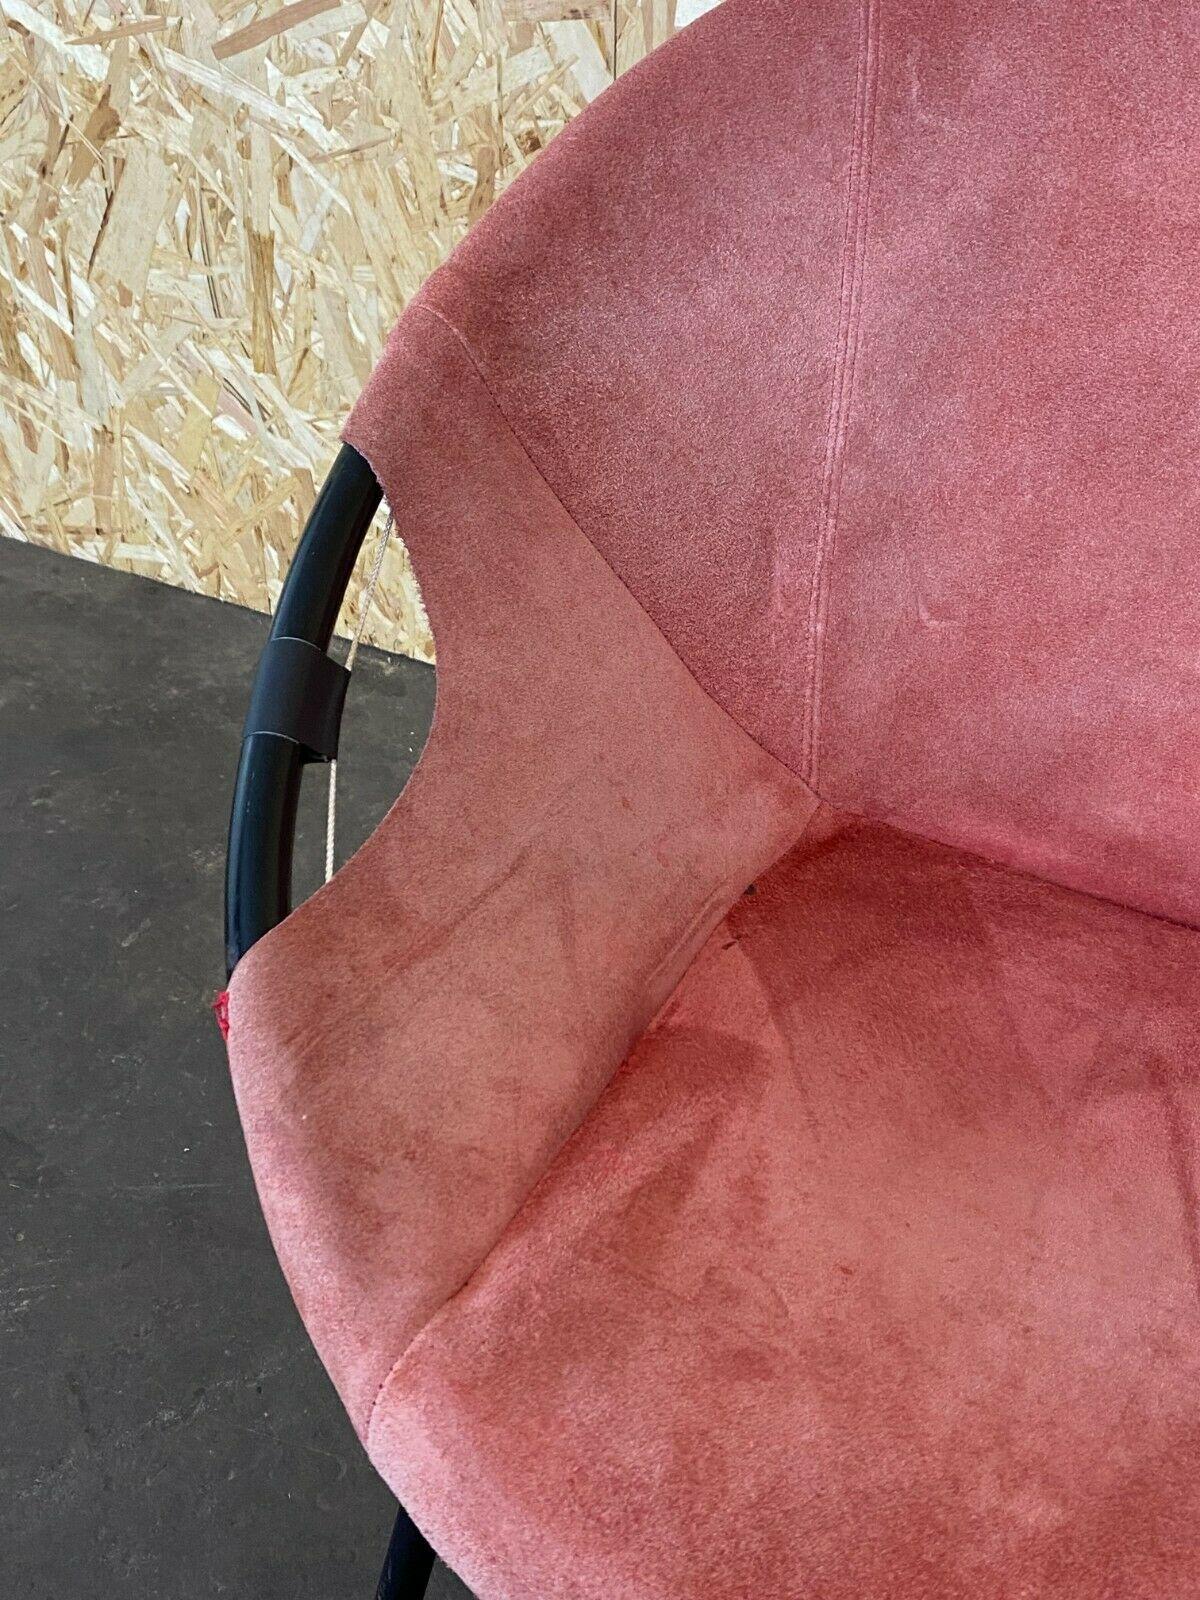 70s circle chair